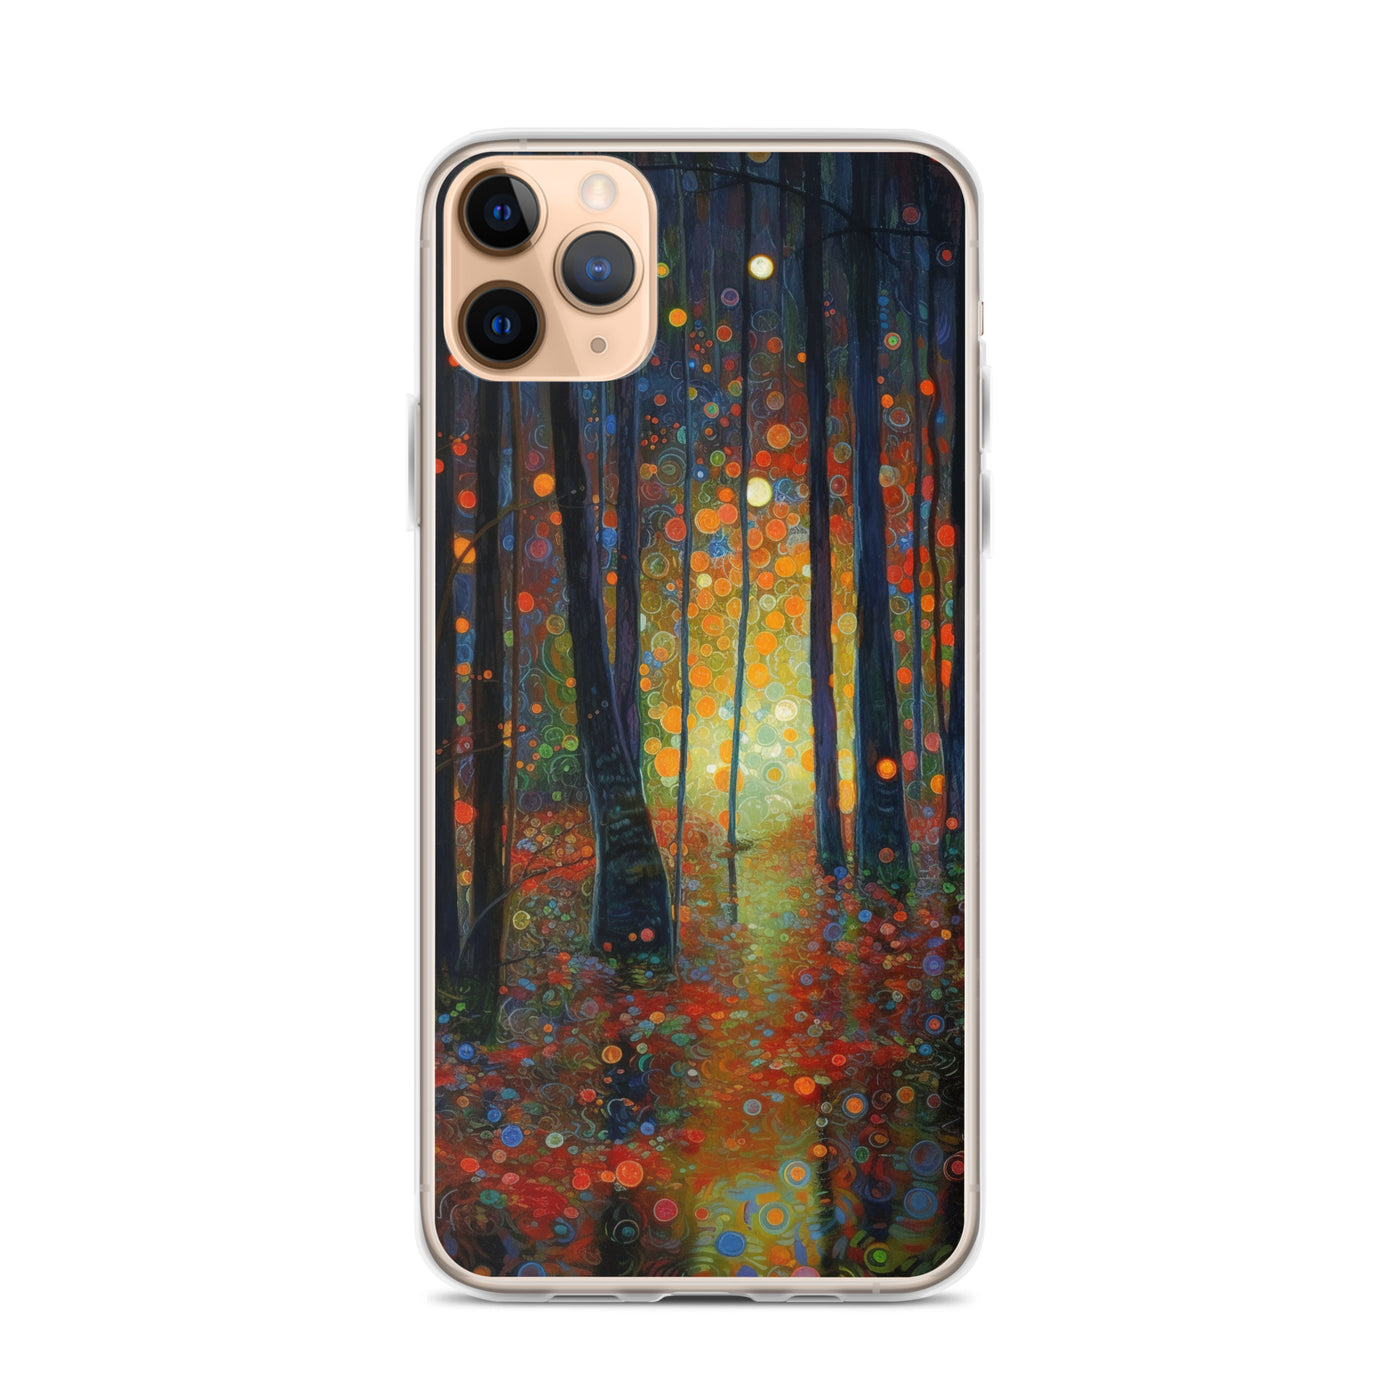 Wald voller Bäume - Herbstliche Stimmung - Malerei - iPhone Schutzhülle (durchsichtig) camping xxx iPhone 11 Pro Max